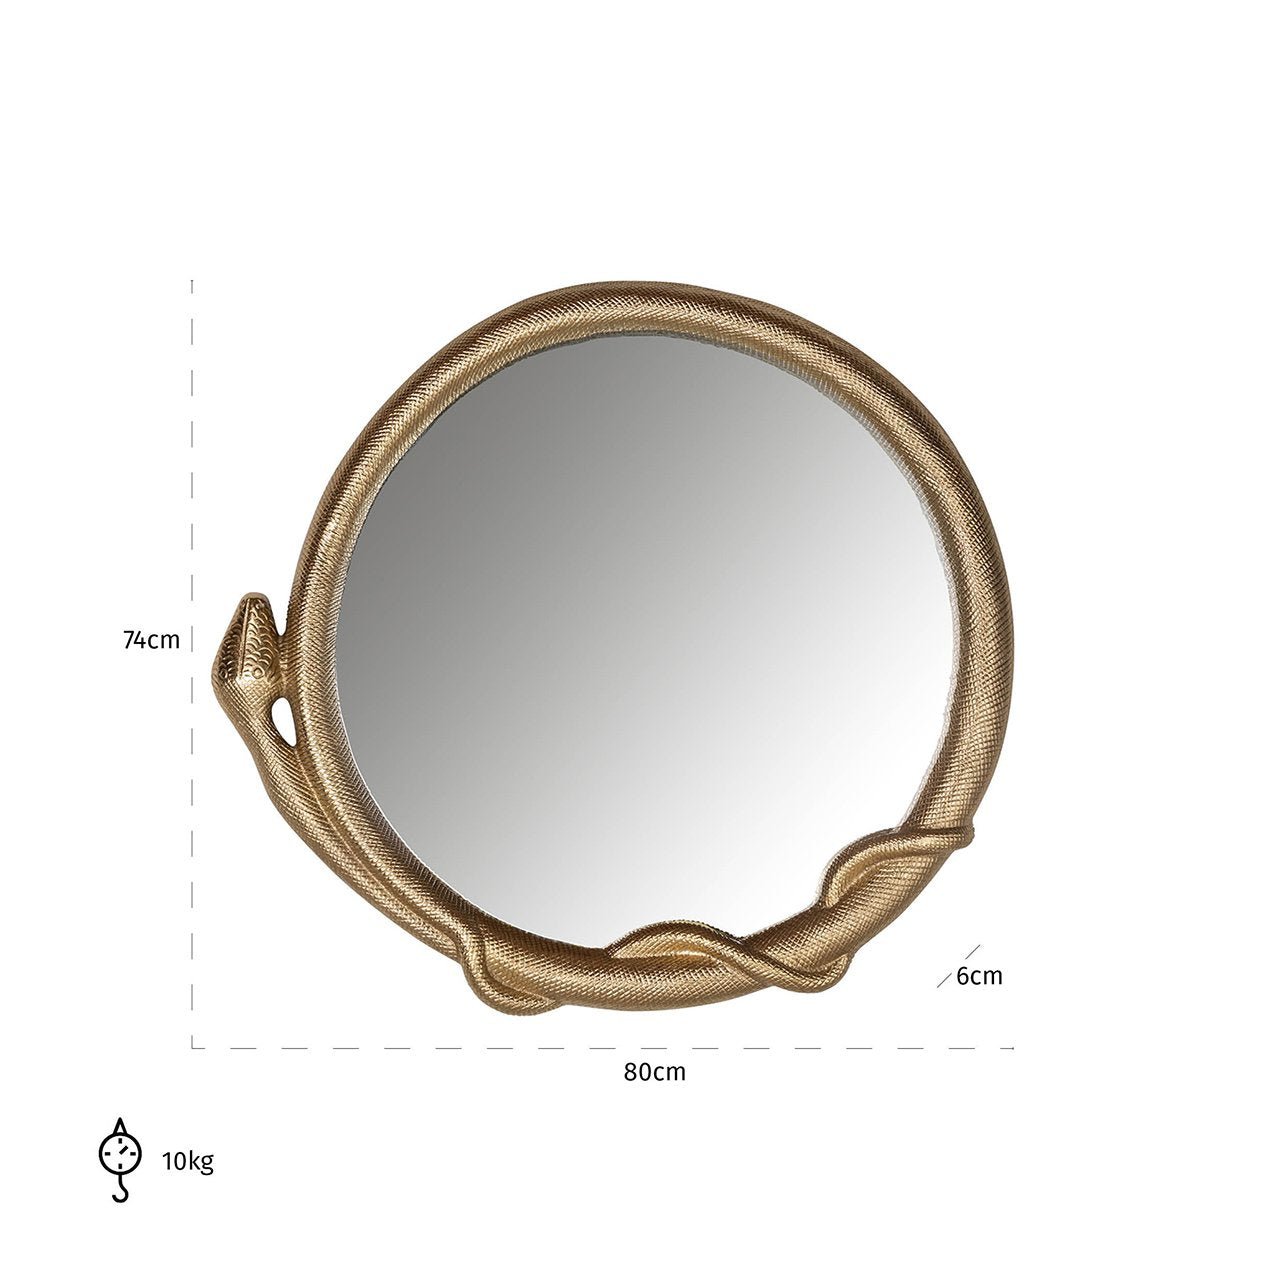 Maataanduiding van ronde spiegel met gouden slangenlijst - Richmond Interiors spiegels kopen